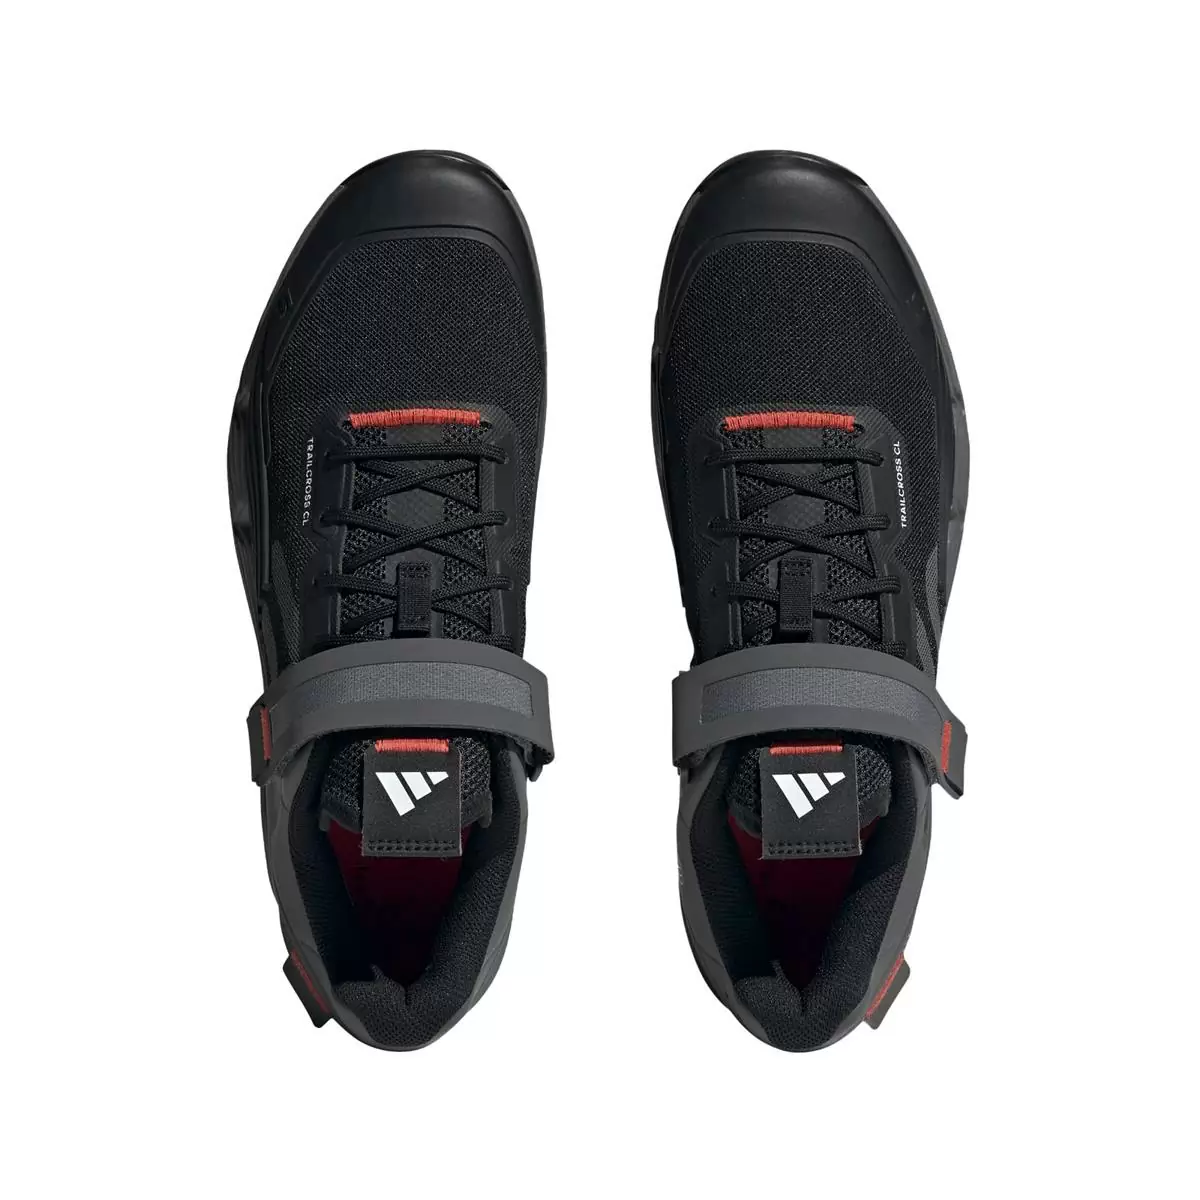 Clip 5.10 Trailcross MTB Shoes Black/Grey Size 41.5 #4